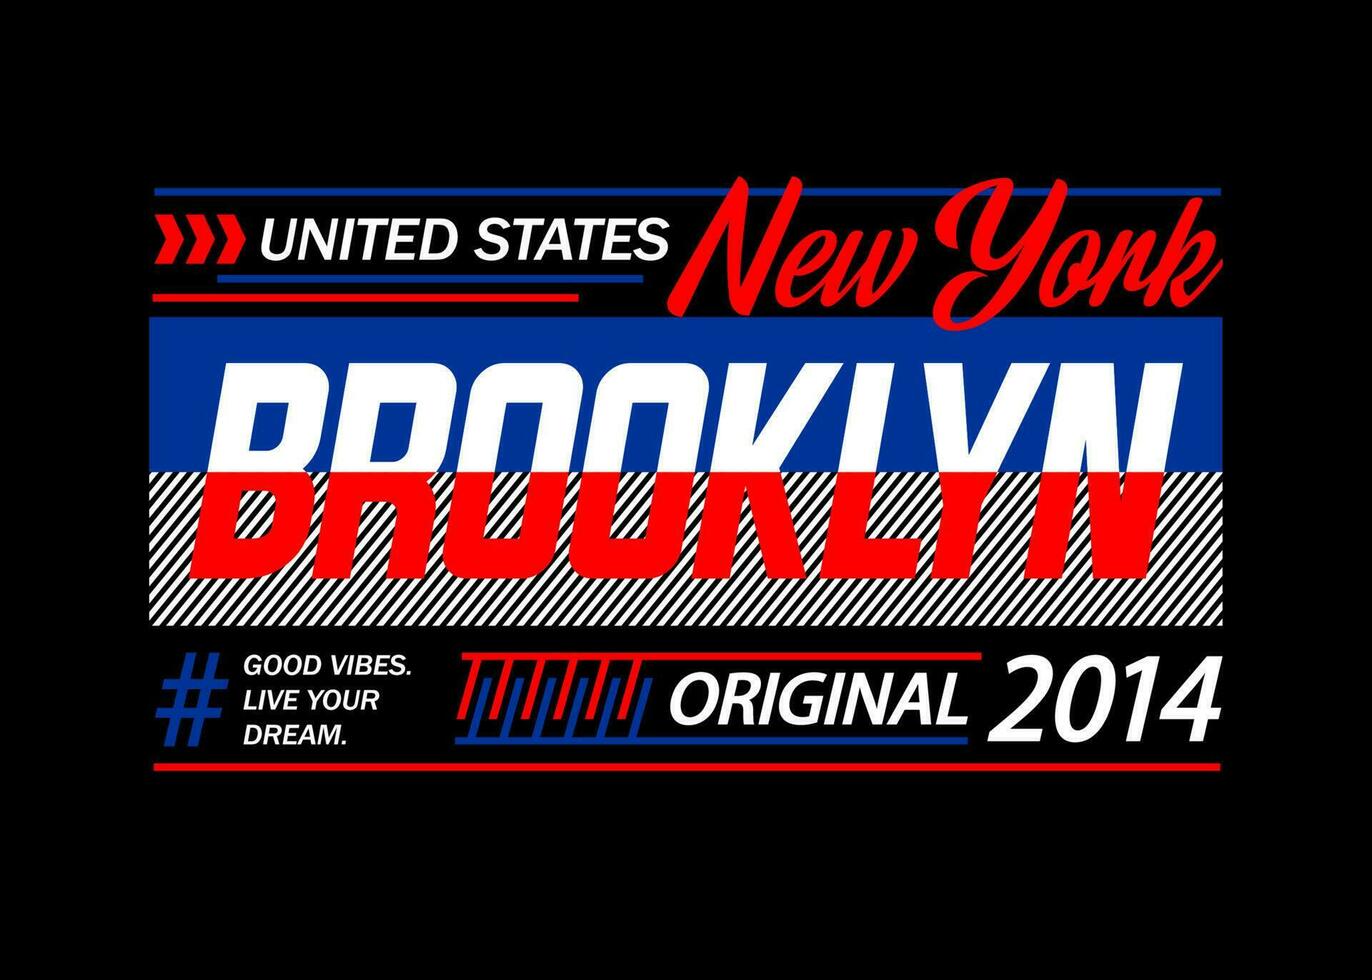 nuovo York brooklyn tipografia disegno, per Stampa su t camicie eccetera. vettore